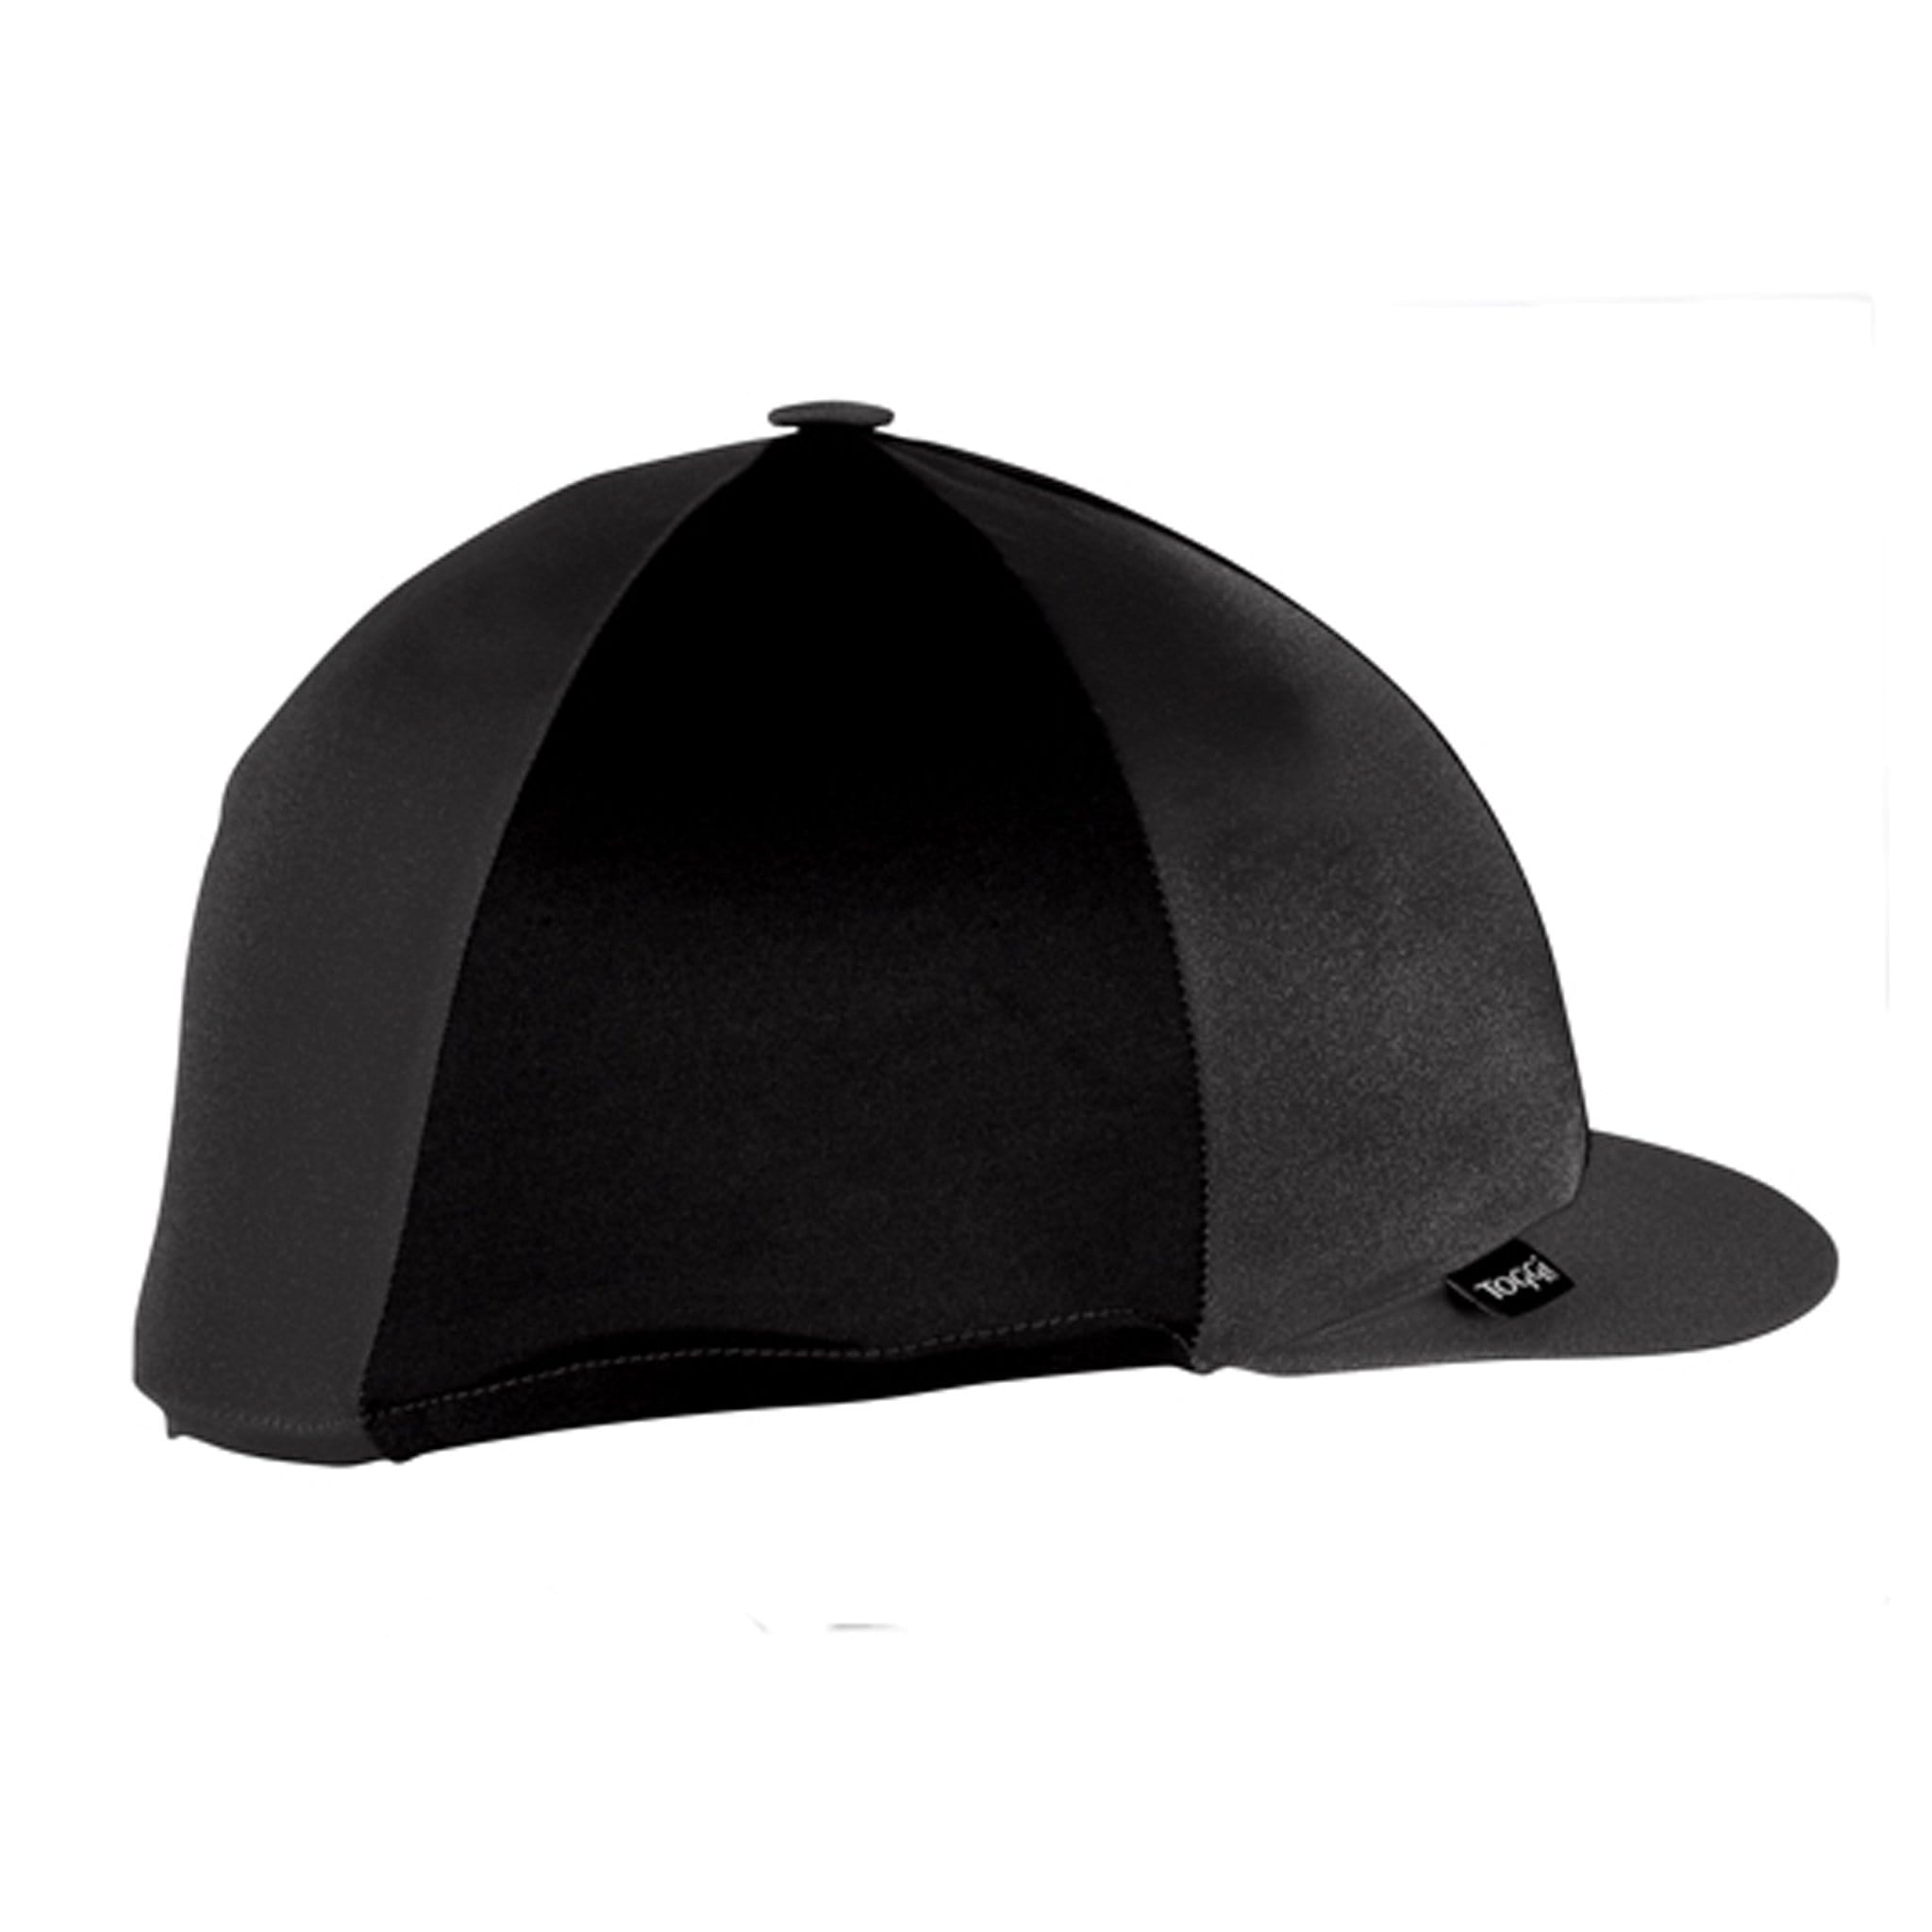 Champion Quartered Cap Cover Black